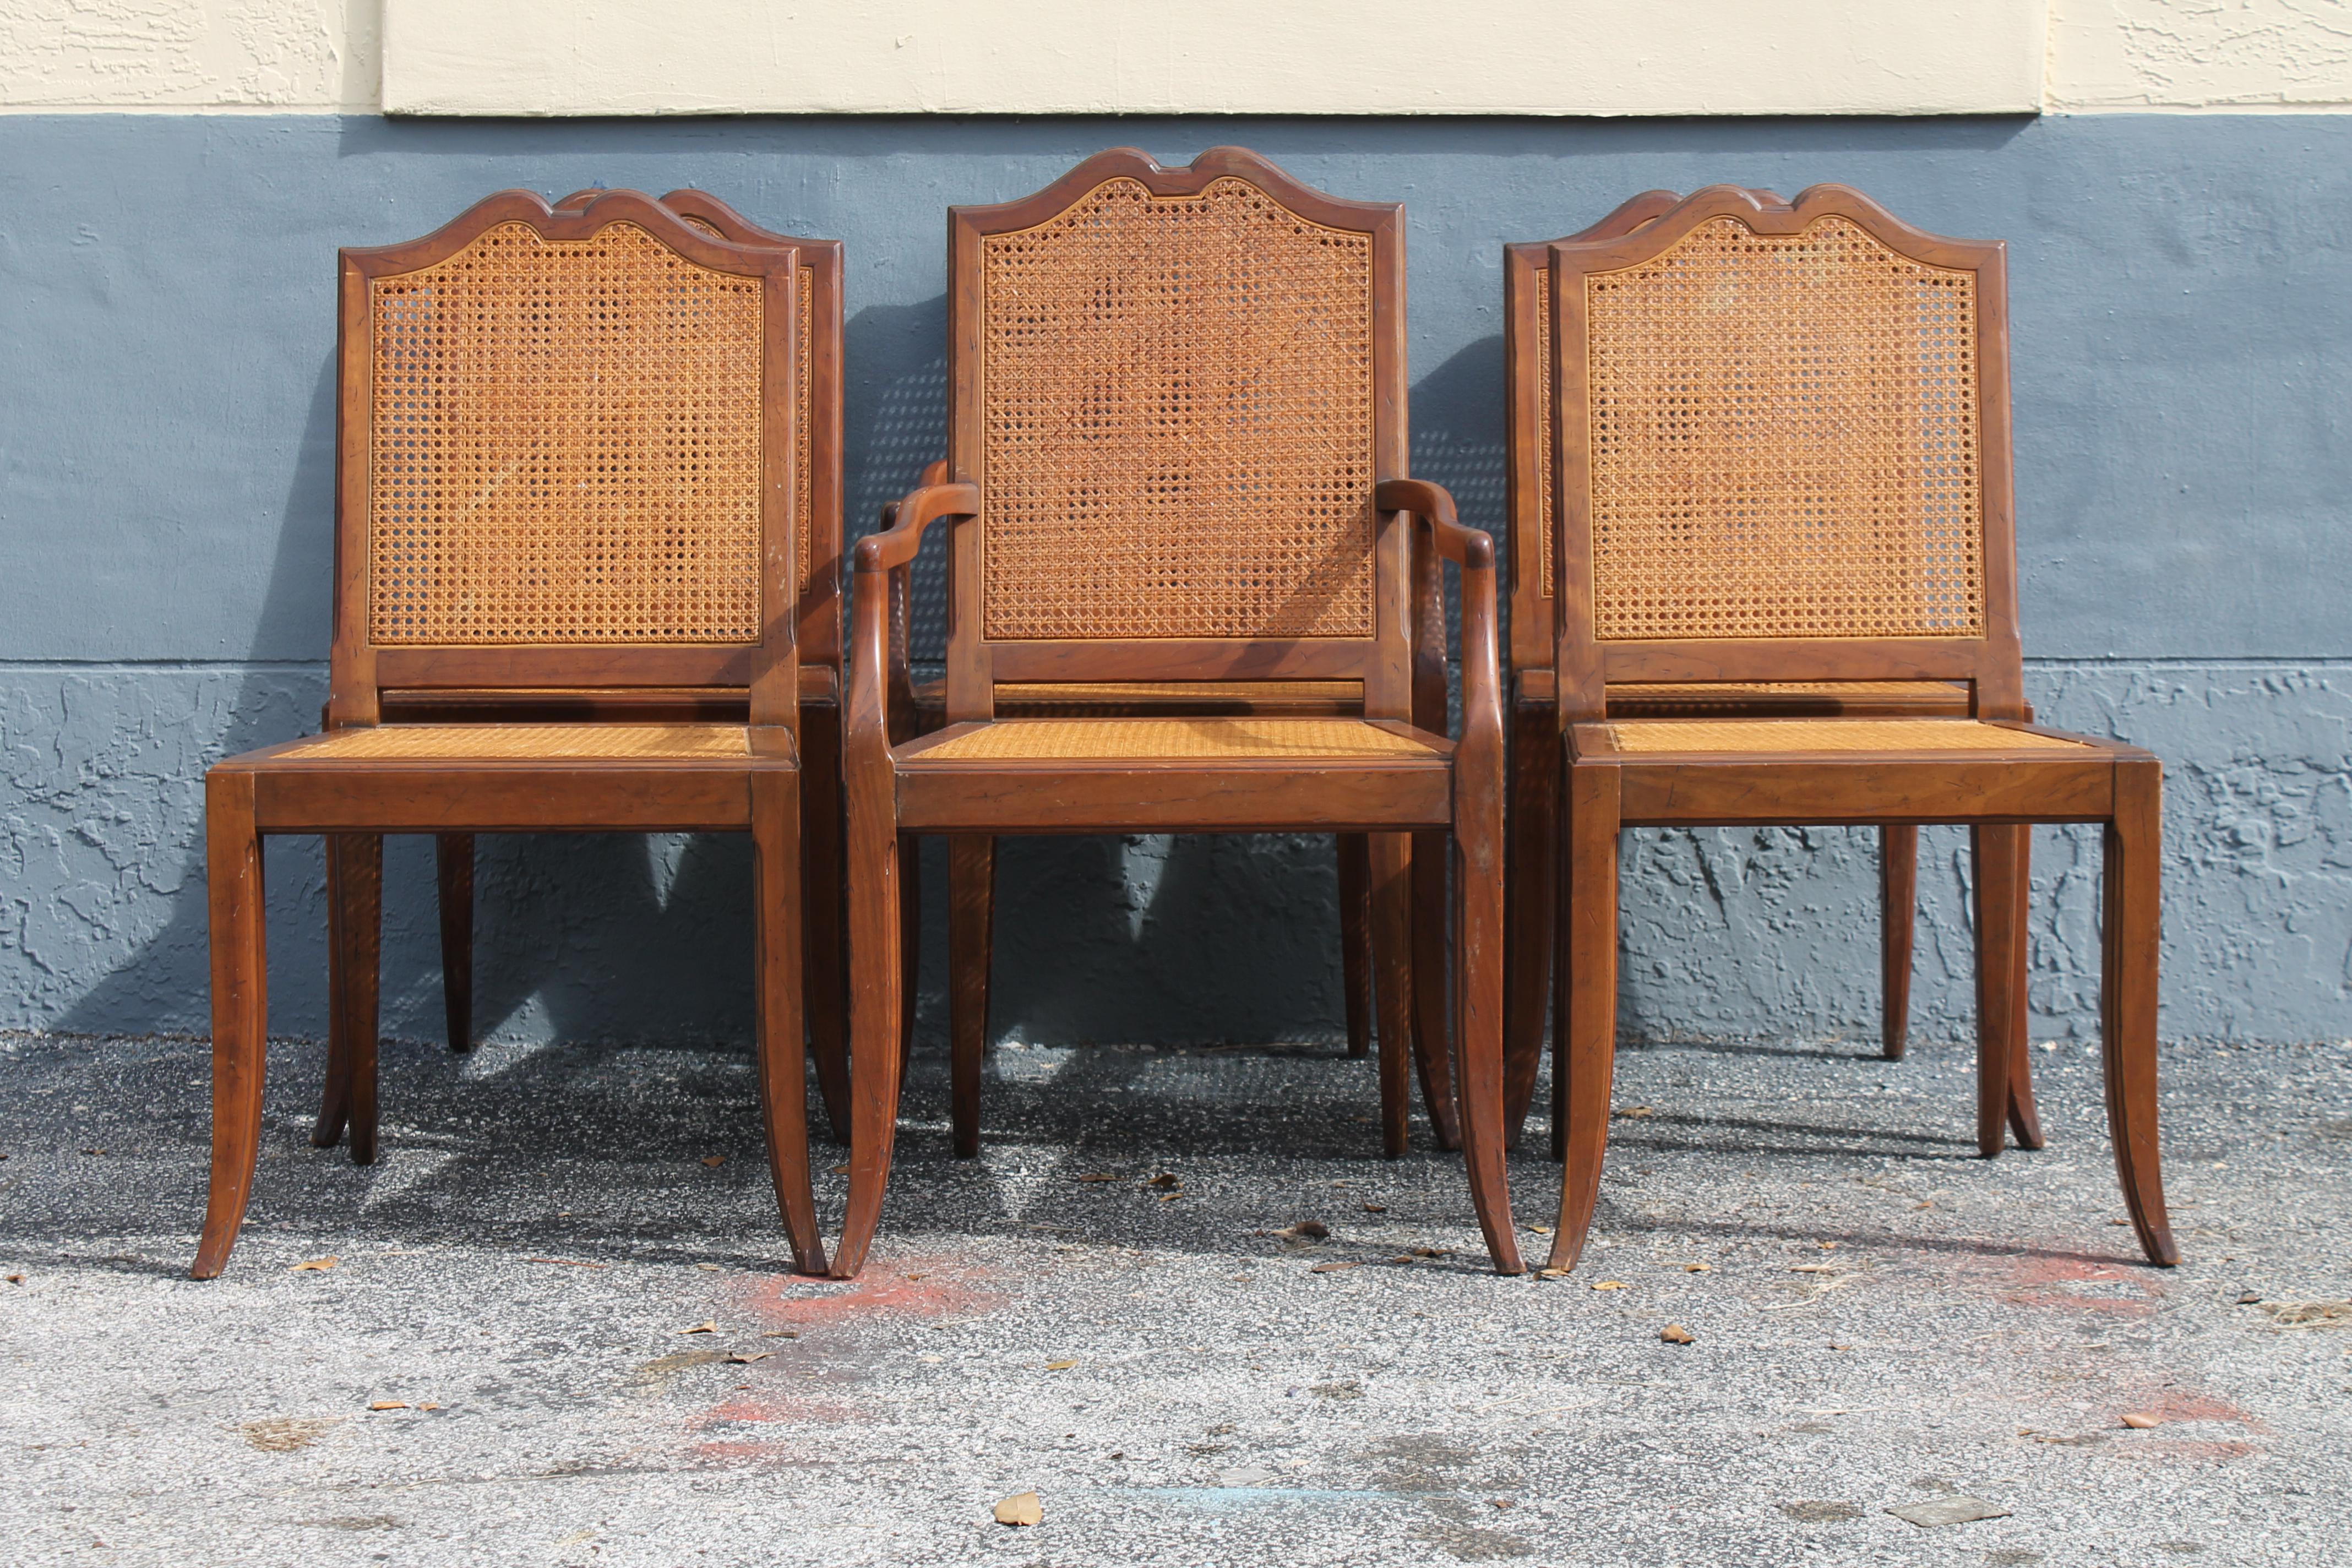 1970 Ensemble de 6 chaises de salle à manger en bois sculpté et cannage. Ces chaises sont magnifiques et le cannage est intact. Bois de noyer.